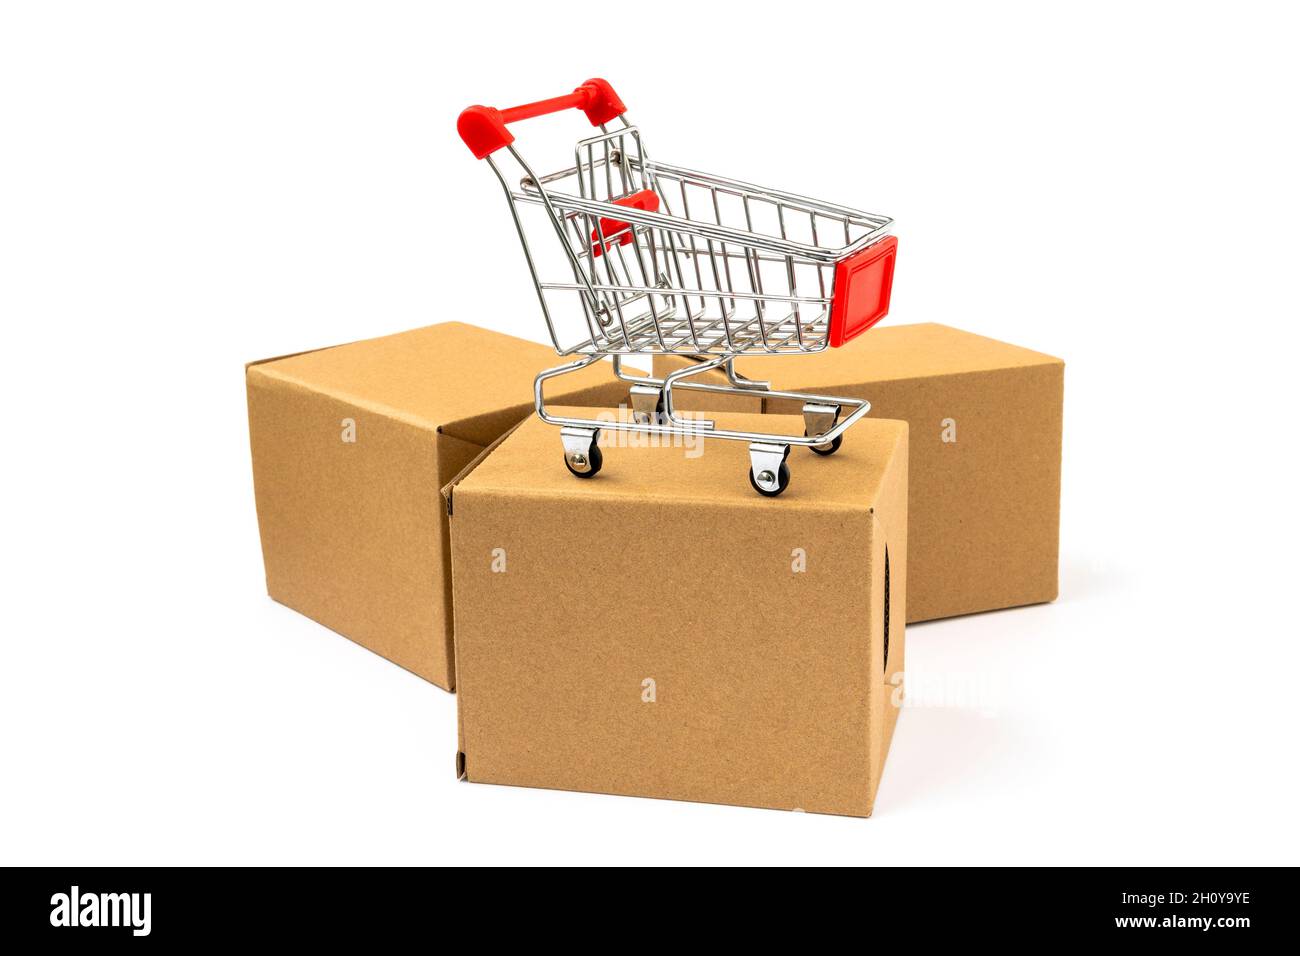 Carro de la compra y tres cajas de cartón. Concepto de comercio electrónico  Fotografía de stock - Alamy